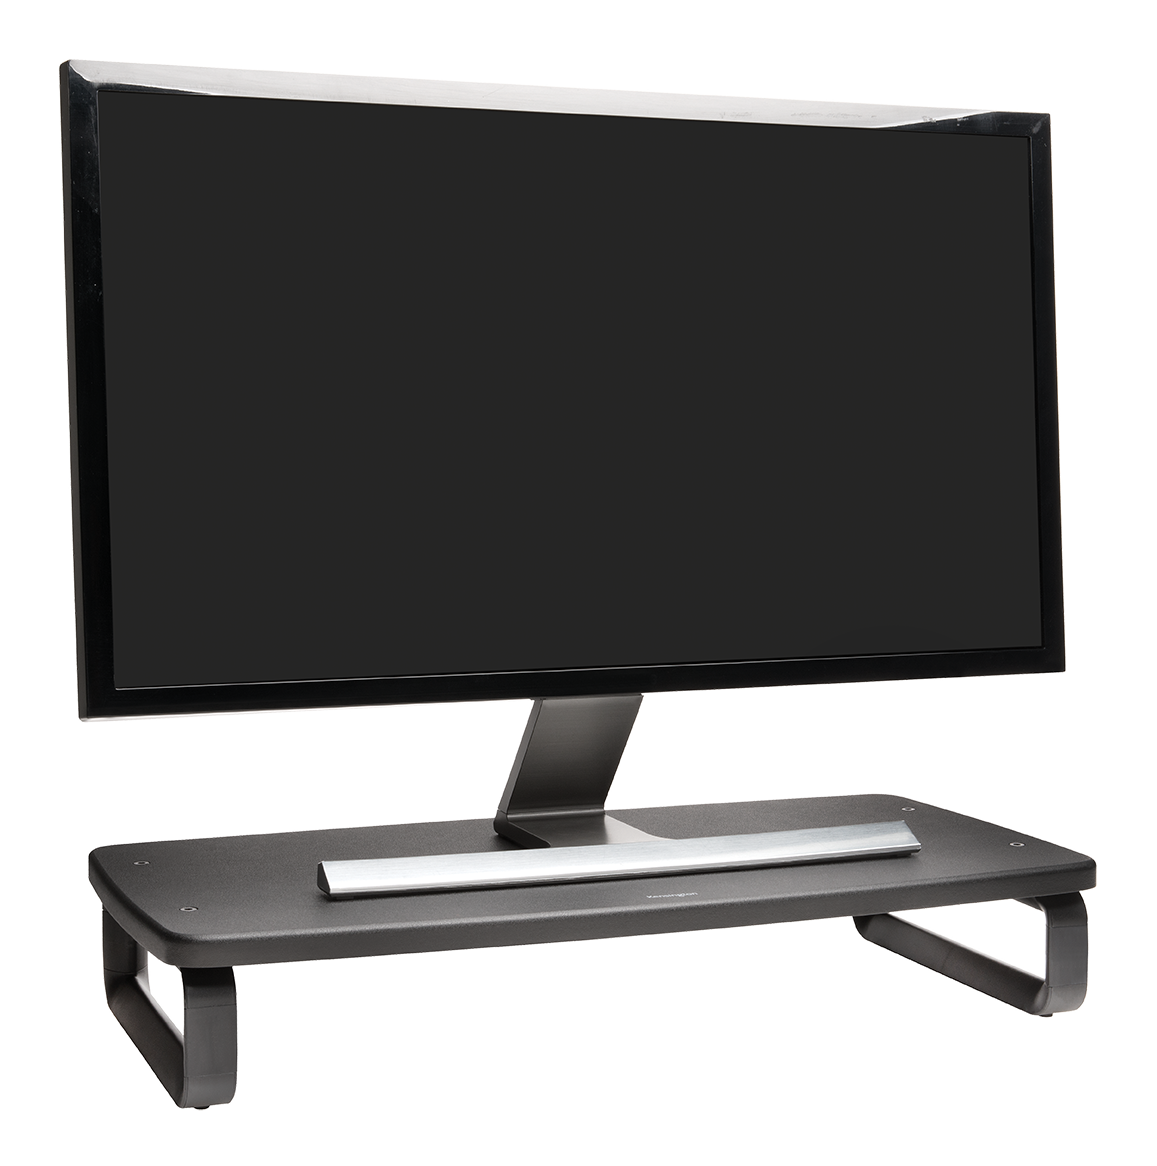 Supporto per monitor extra largo regolabile in altezza nero con monitor su sfondo bianco